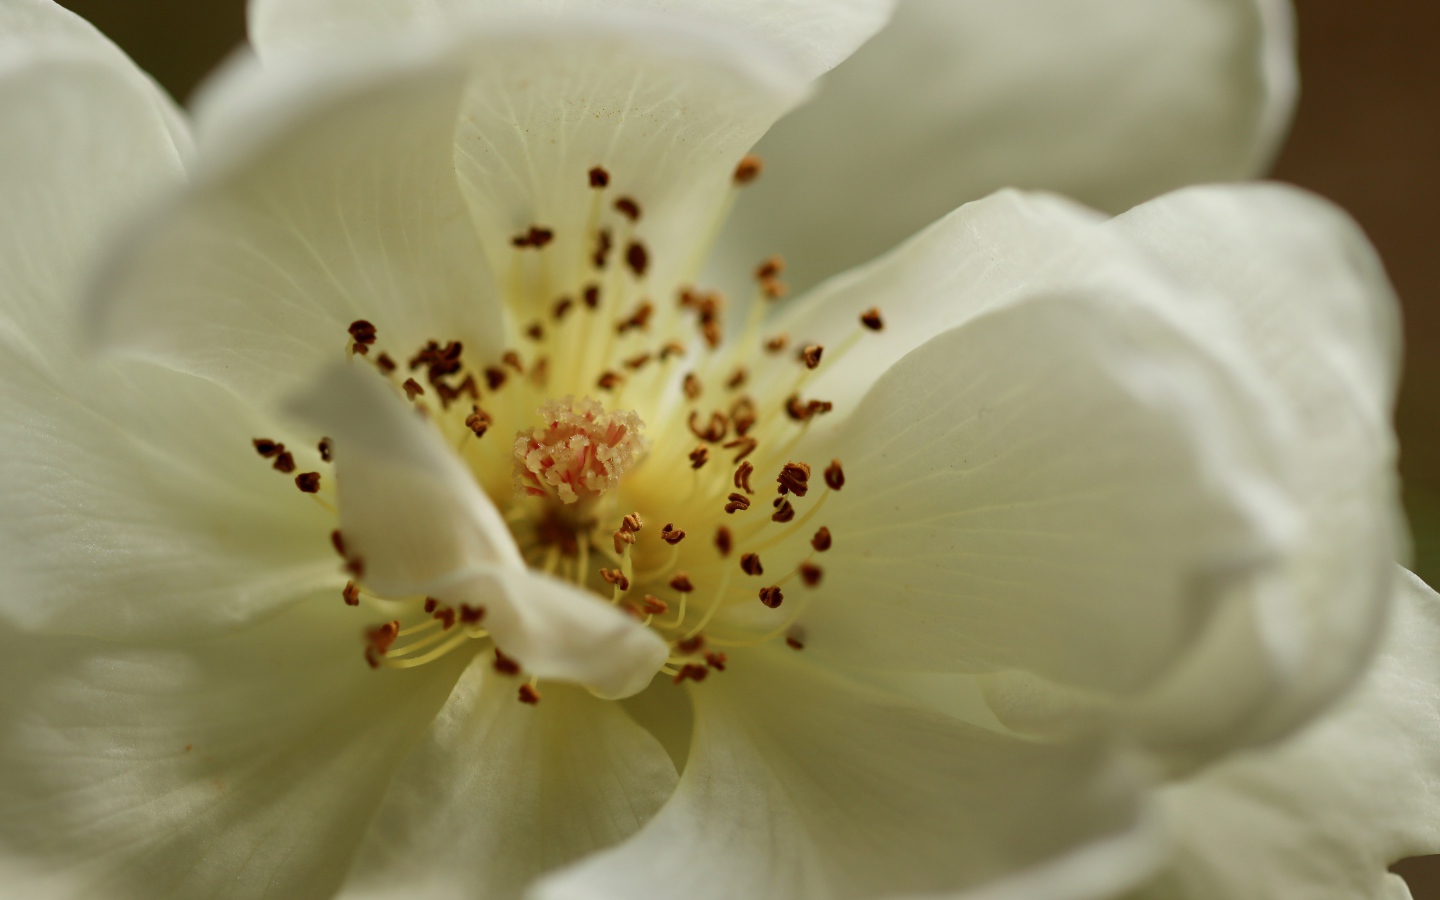 Серединка белого цветка крупным планом 